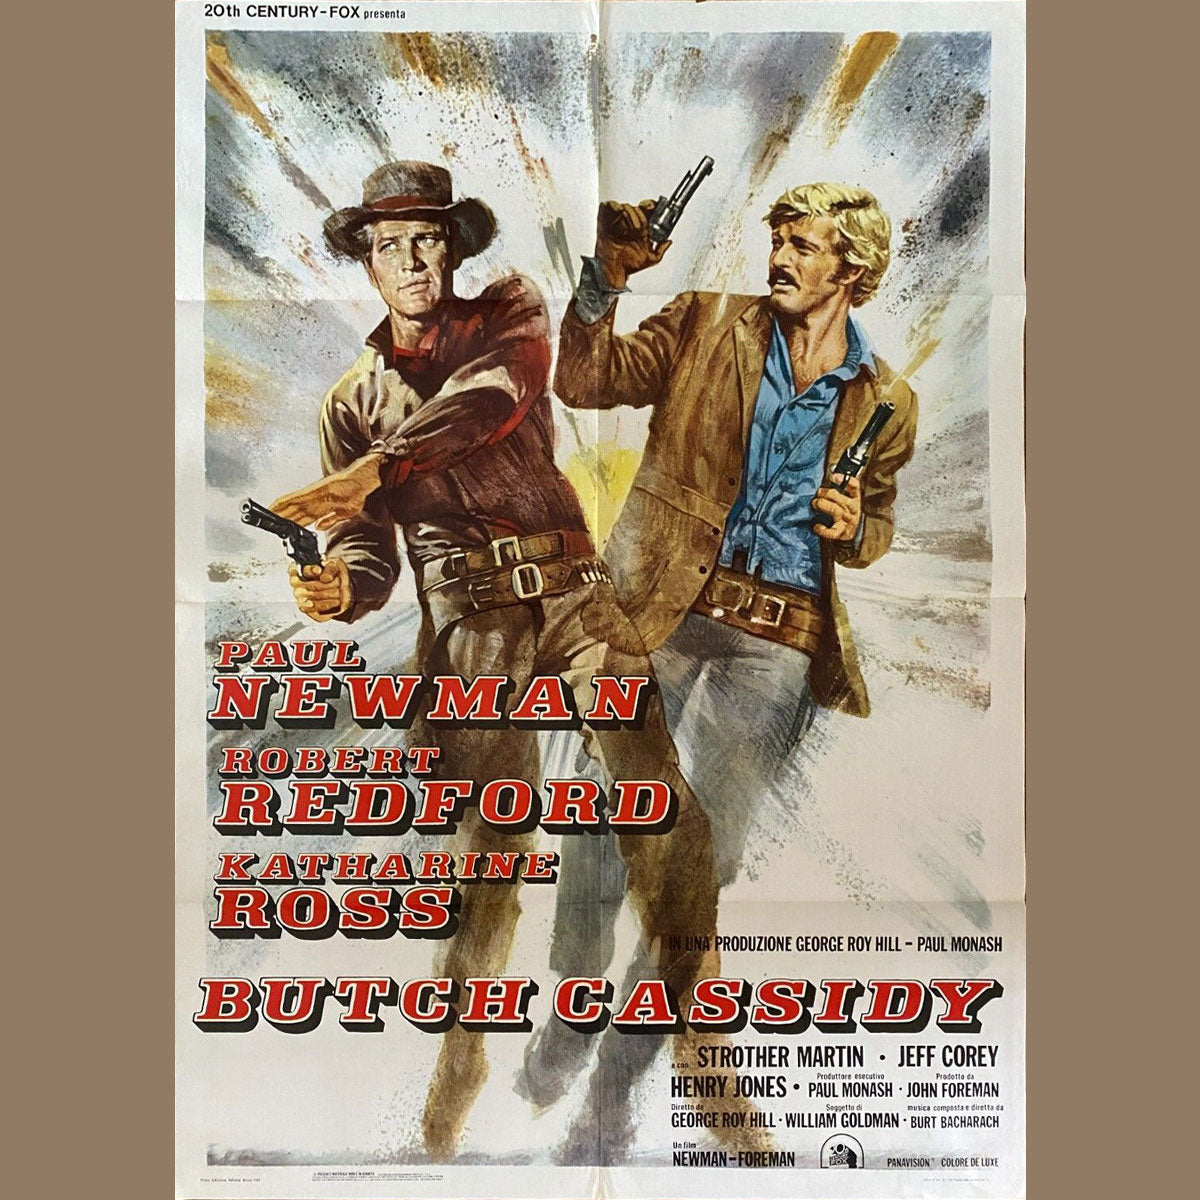 Butch Cassidy and The Sundance Kid (1974R)